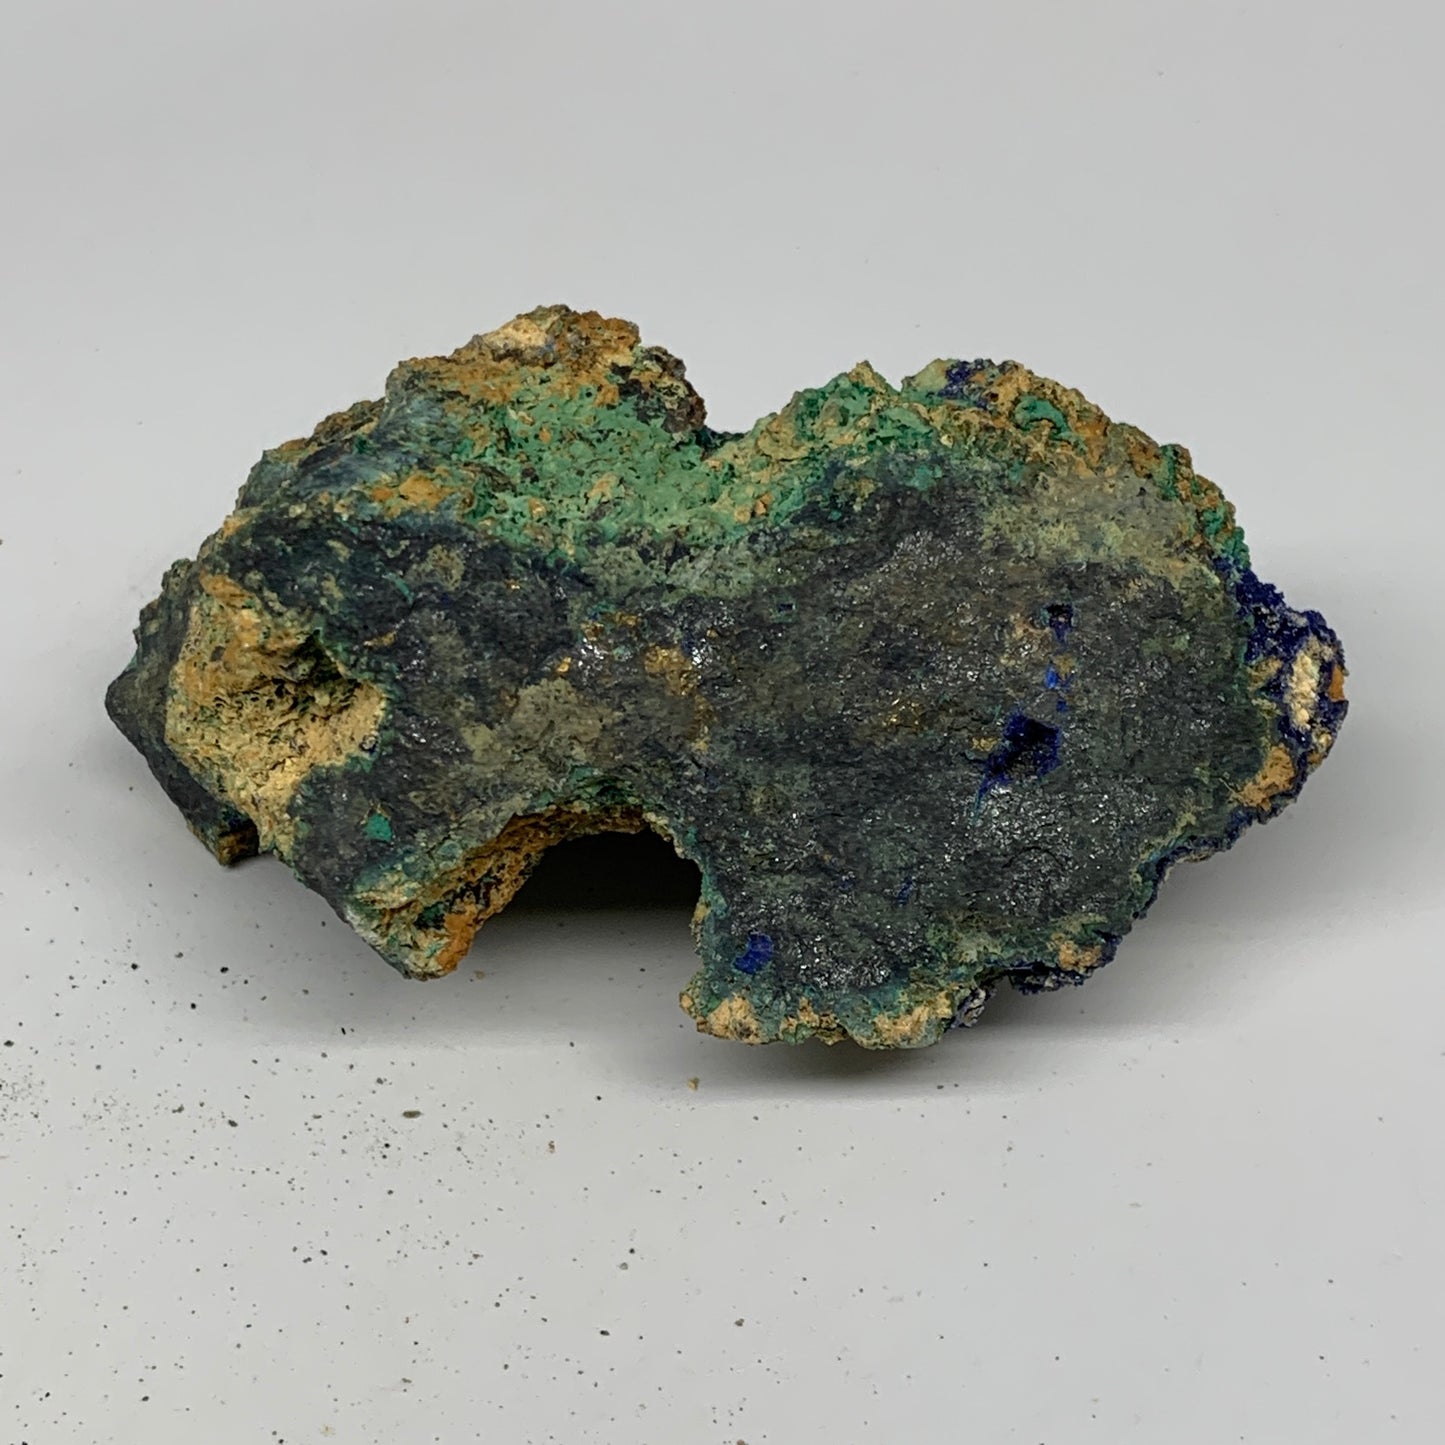 636g, 4.6"x2.4"x2.8", Rough Azurite Malachite Mineral Specimen @Morocco, B10920